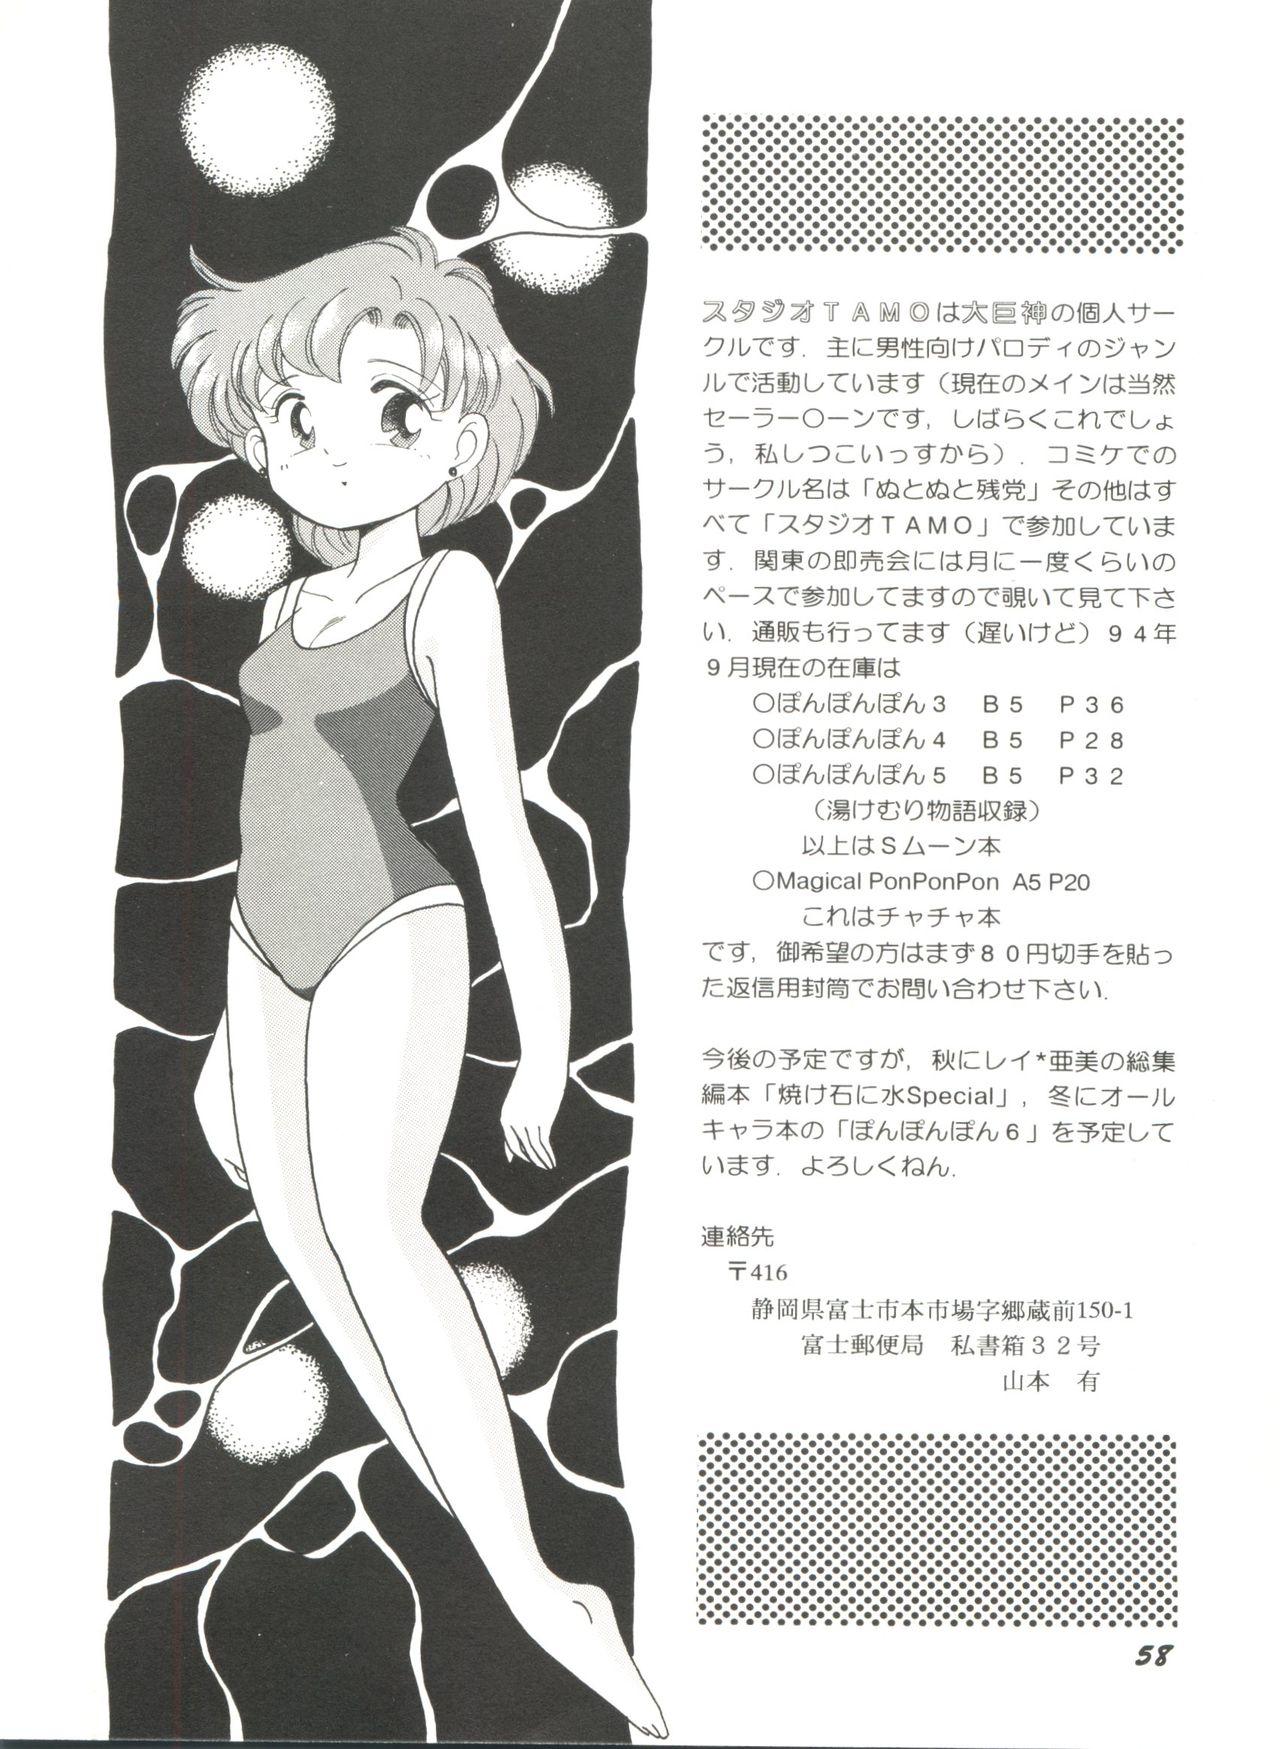 Bishoujo Doujinshi Anthology 5 - Moon Paradise 3 Tsuki no Rakuen 59